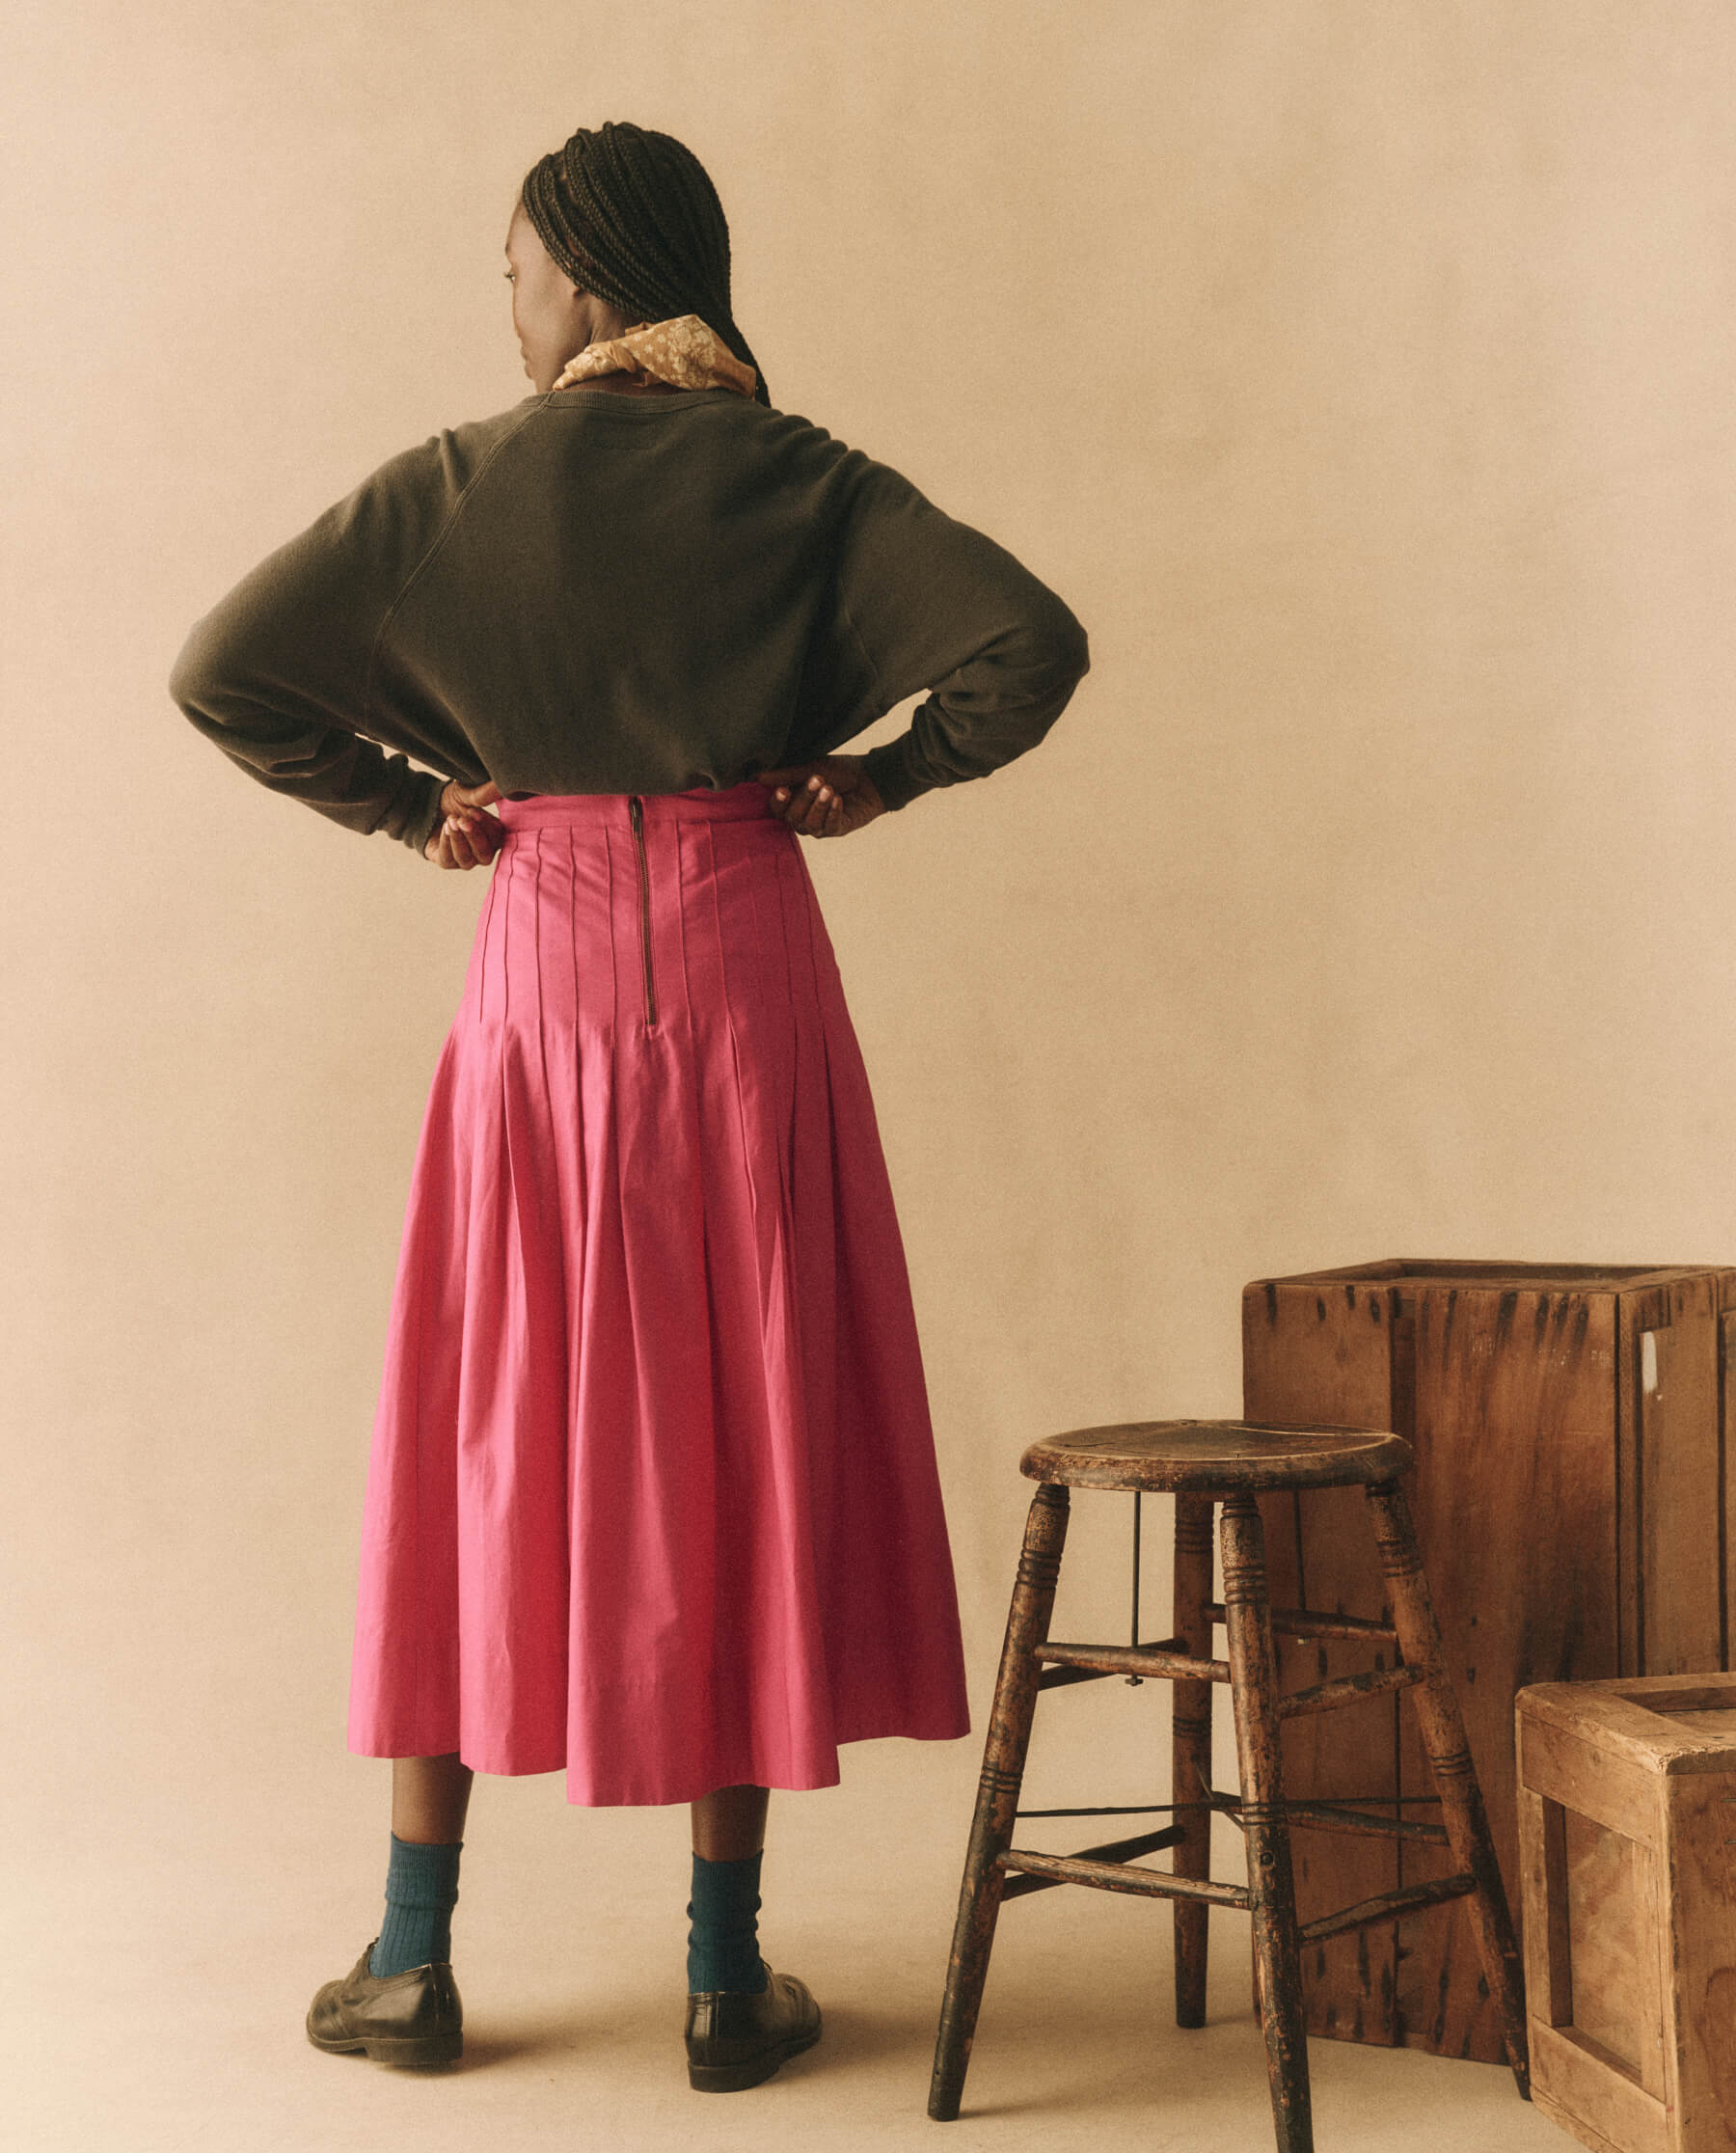 The Rhythm Skirt. -- Fuchsia SKIRTS THE GREAT. HOL 23 D1 SALE